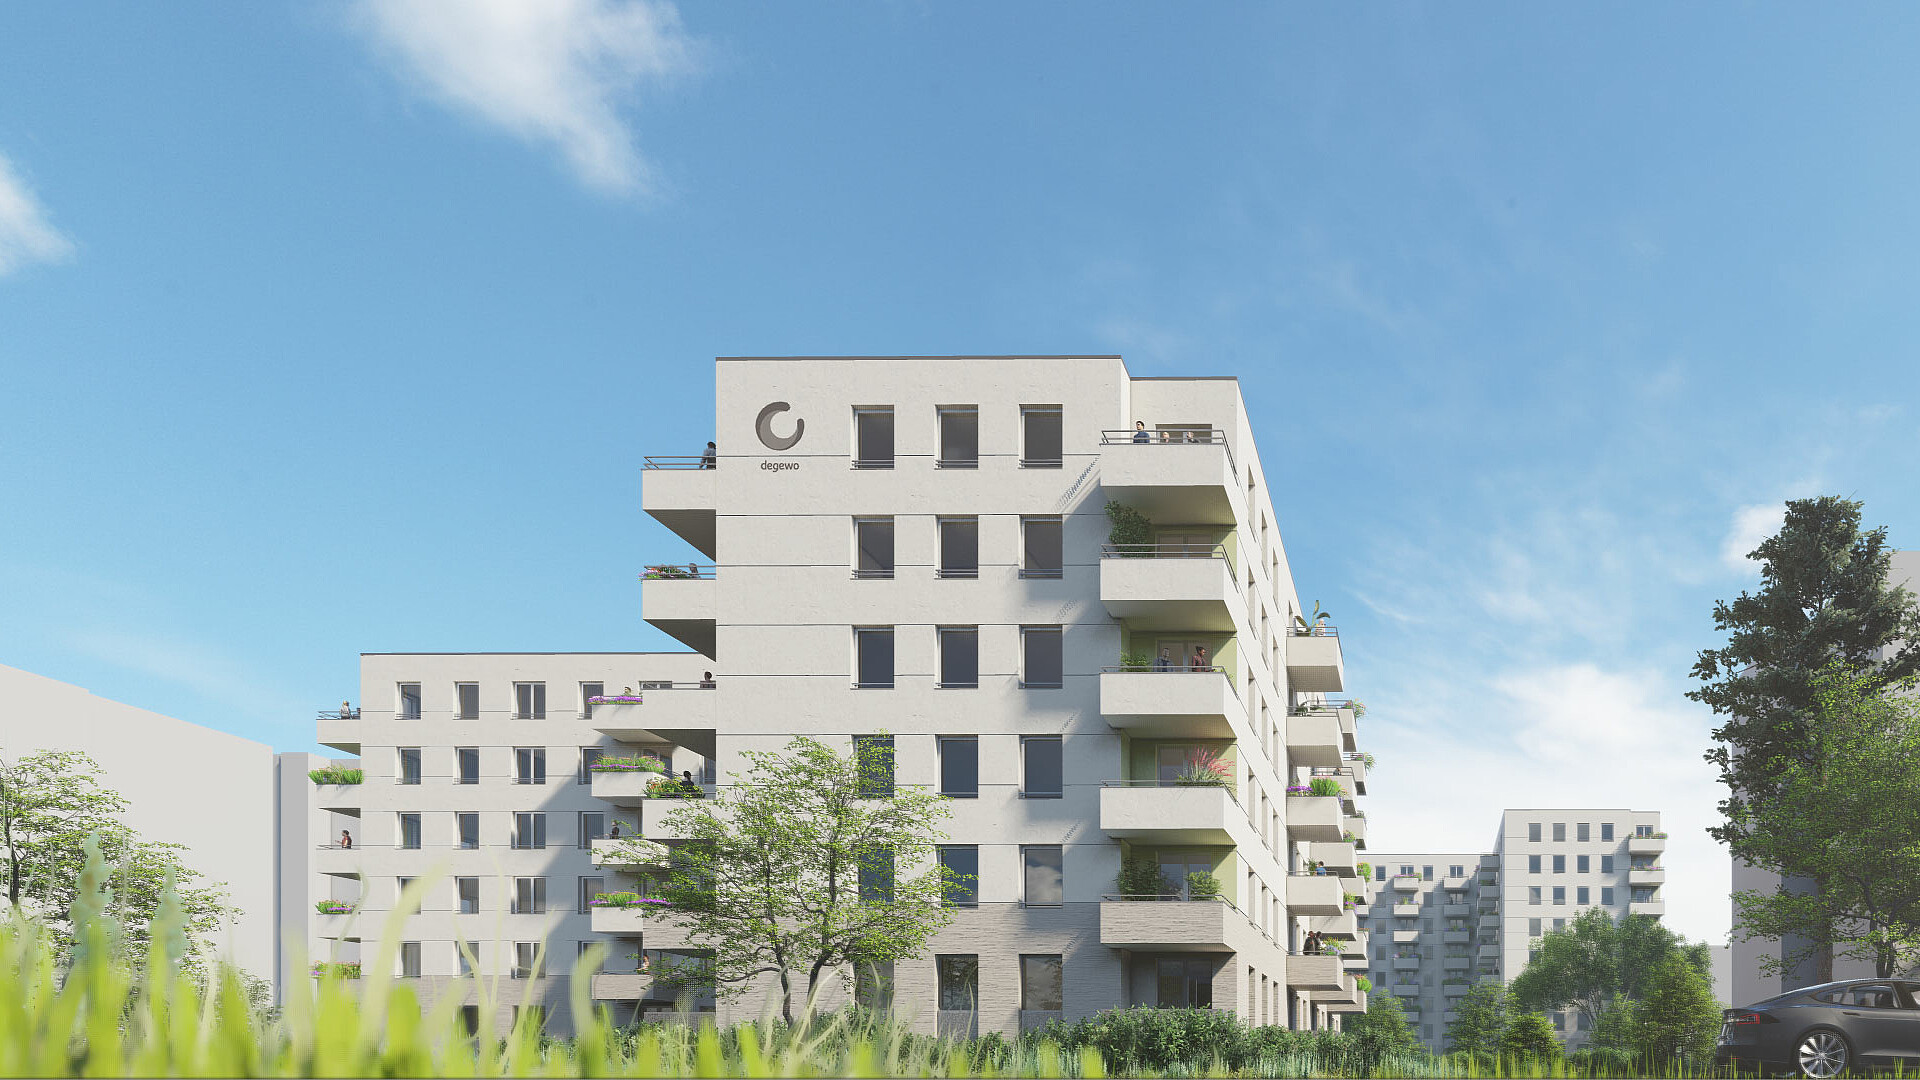 Visualisierung degewo Neubau Bornhagenweg 43 in Lichtenrade, Haus B